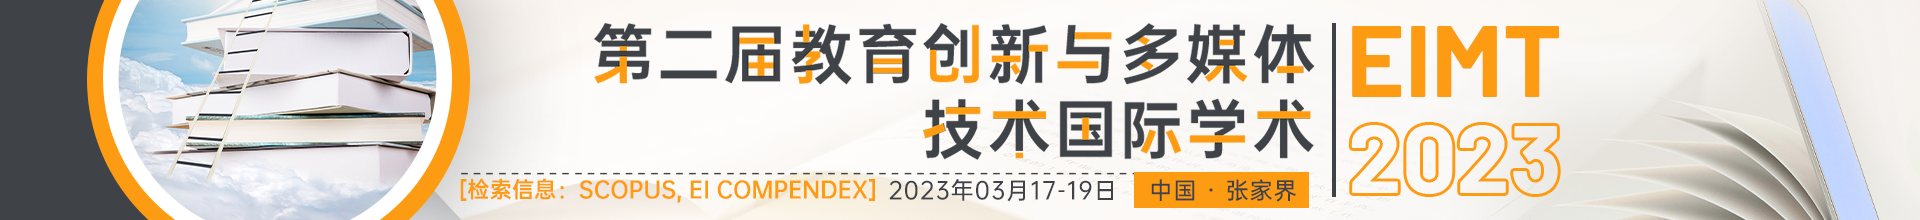 03月张家界站- EIMT 2023会议云banner-20220914.psd.png